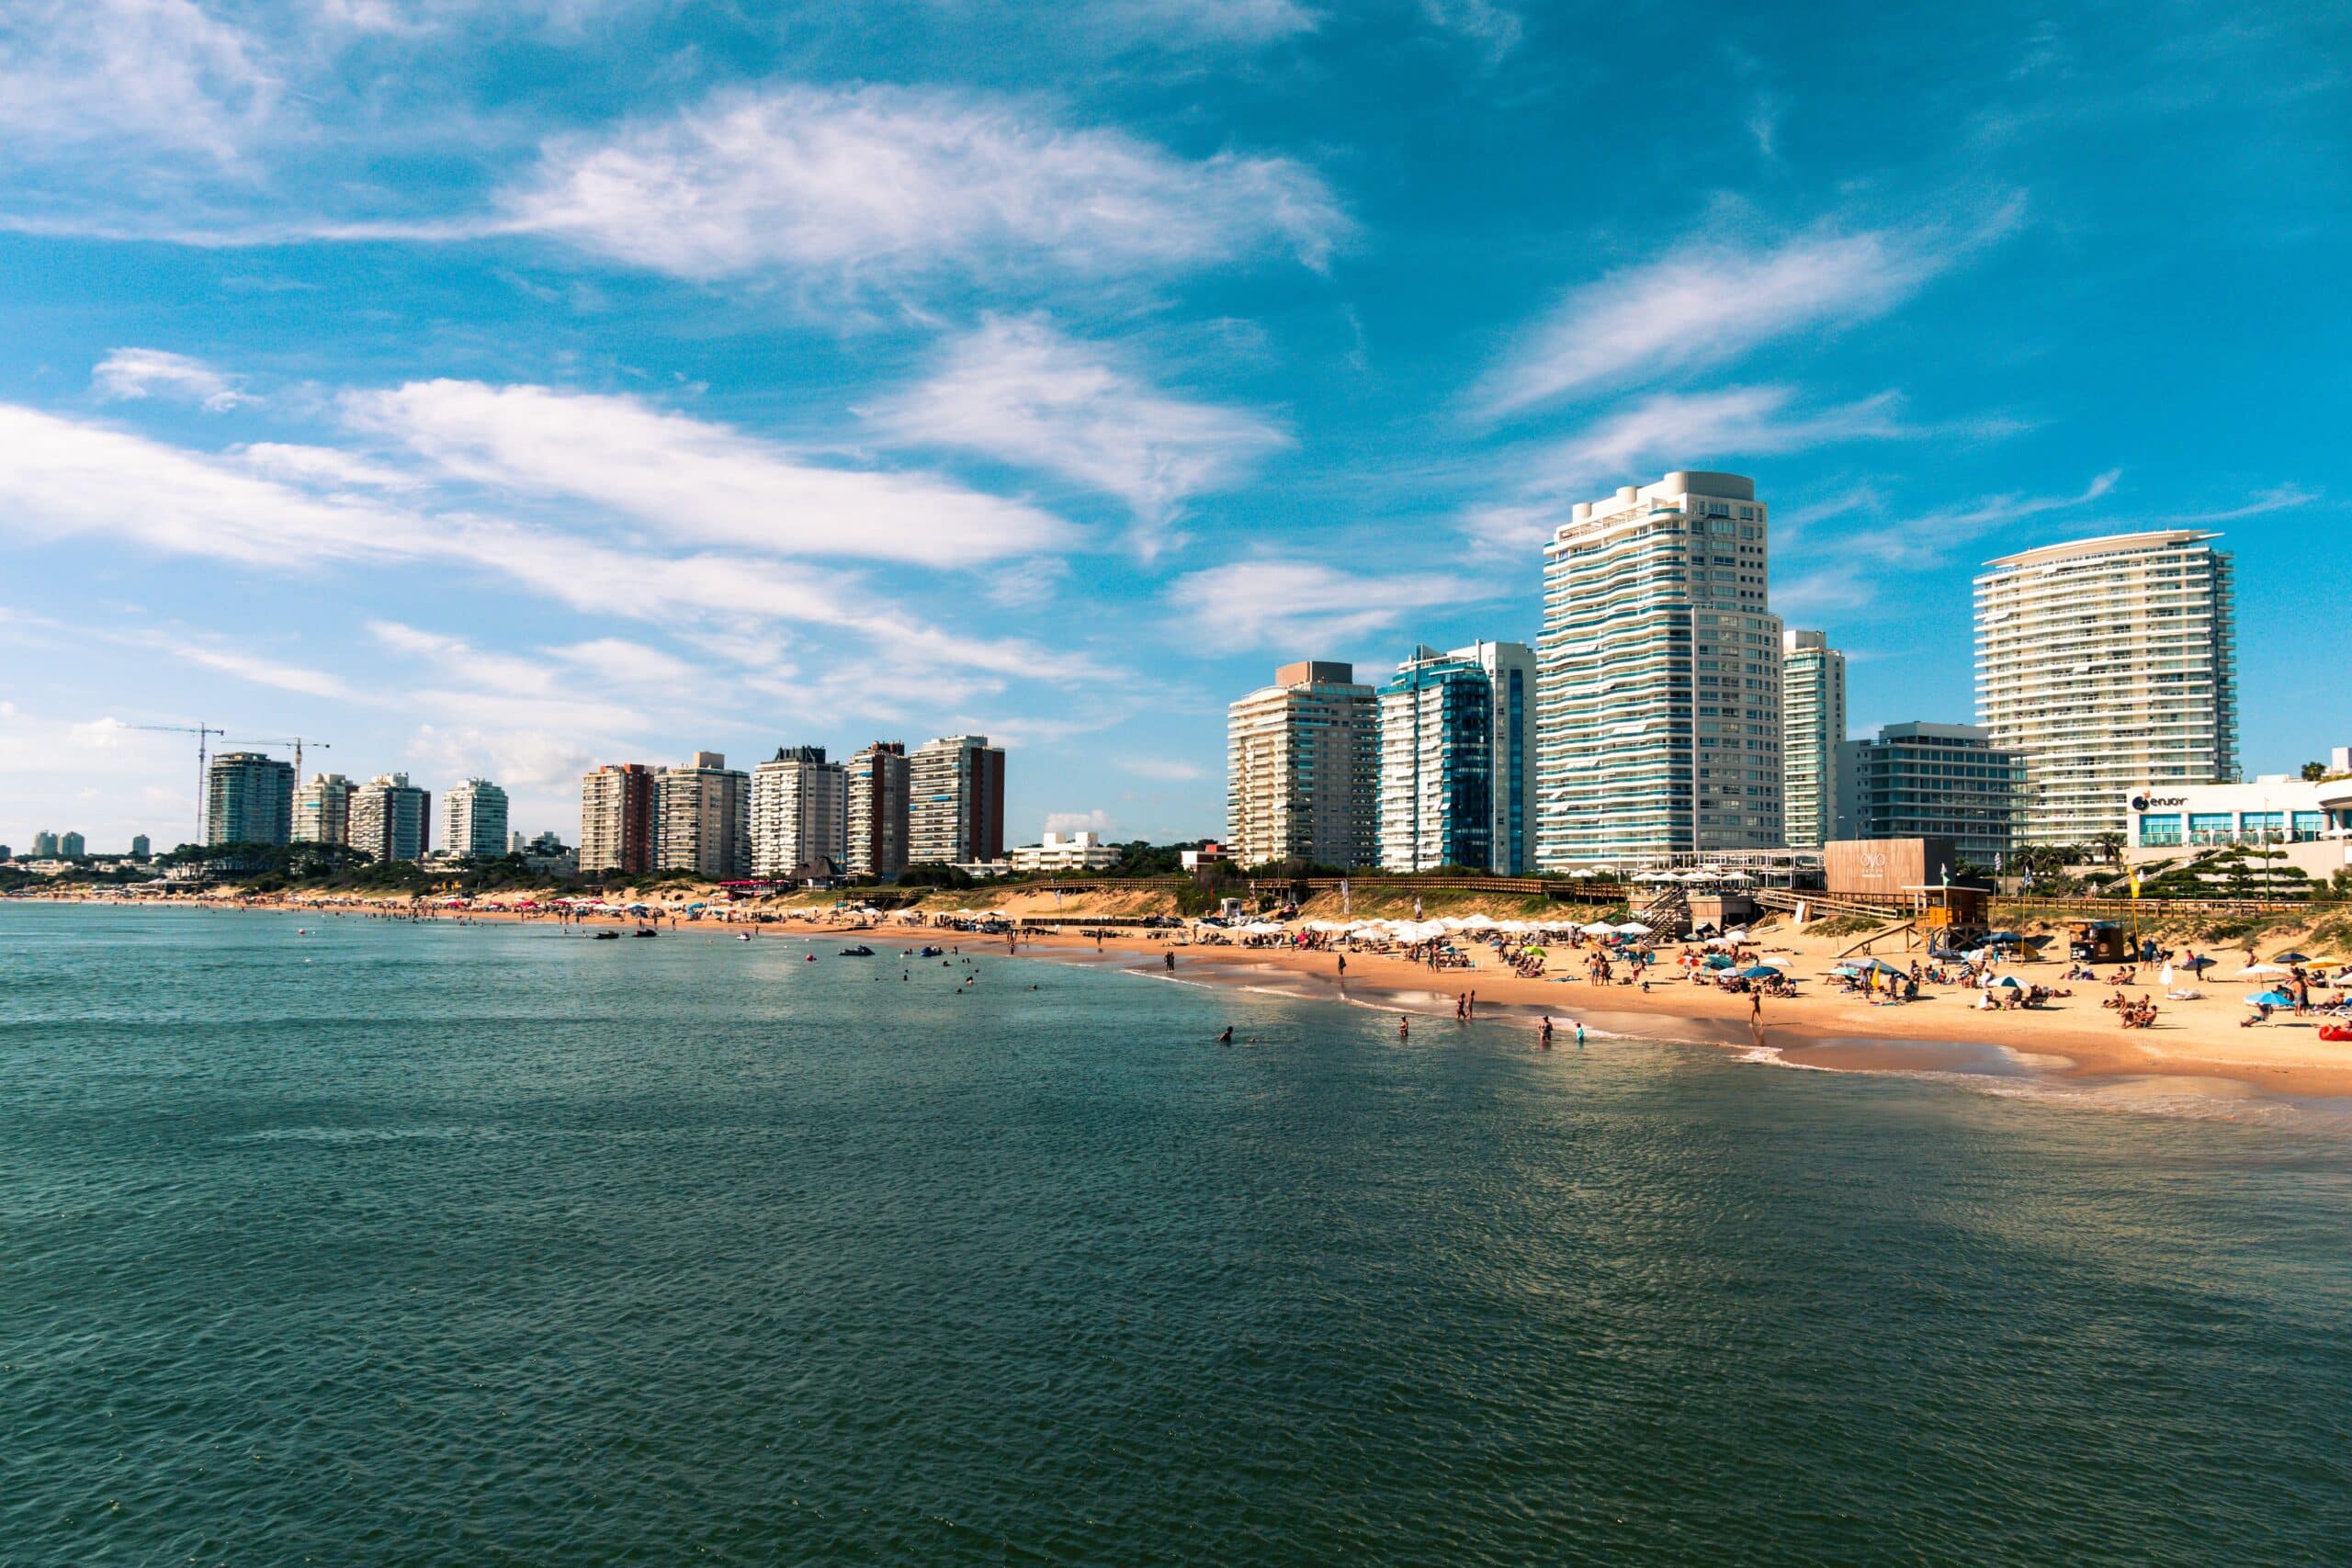 Praia de mar azul com pessoas se divertindo na areia e muitos prédios luxuosos ao fundo em um dia de céu azul ensolarado. Imagem representando um texto sobre seguro viagem Punta Del Este.